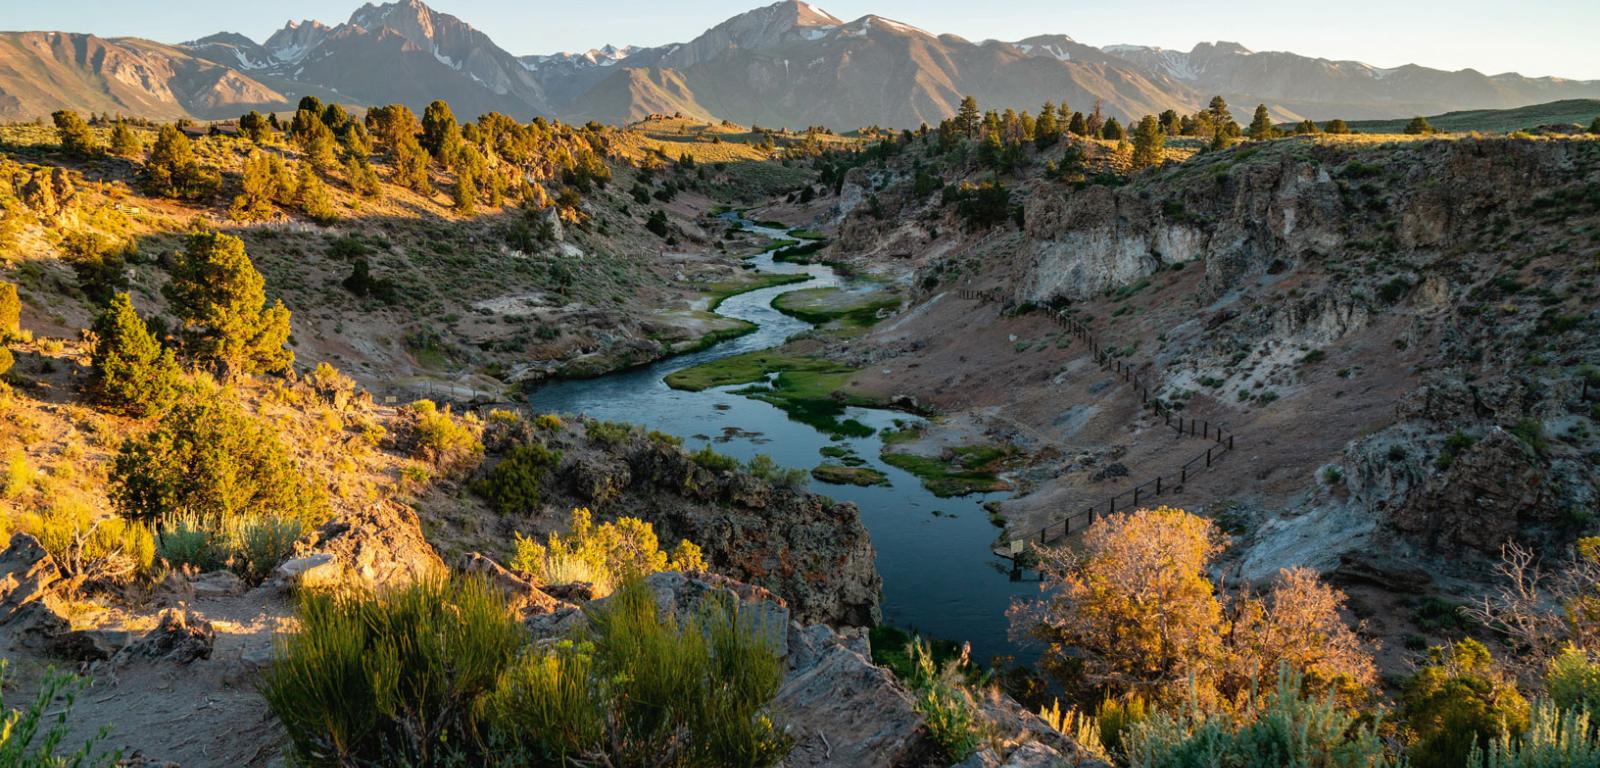 W potoku Hot Creek płynie wrząca woda podgrzana przez energię geotermalną, której źródłem jest superwulkan Long Valley, ukrywający się w skorupie ziemskiej na pograniczu amerykańskich stanów Kalifornia i Nevada.